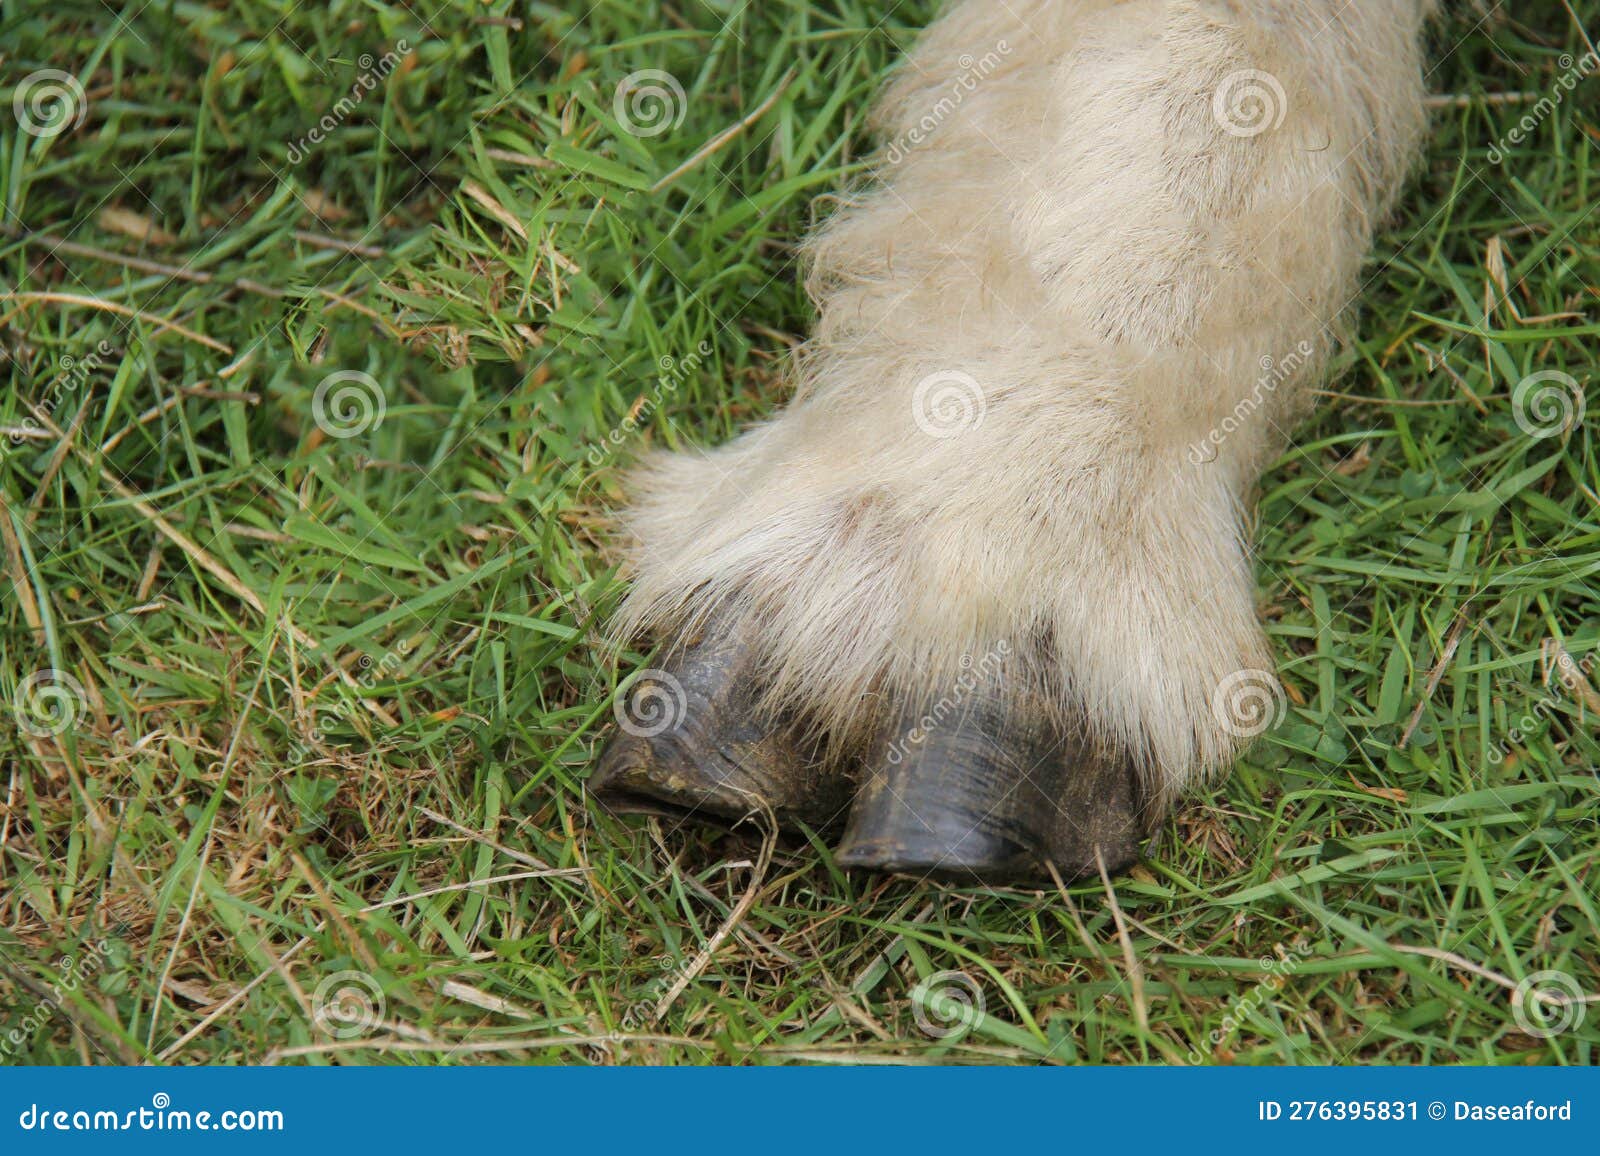 sheep hoofed foot.